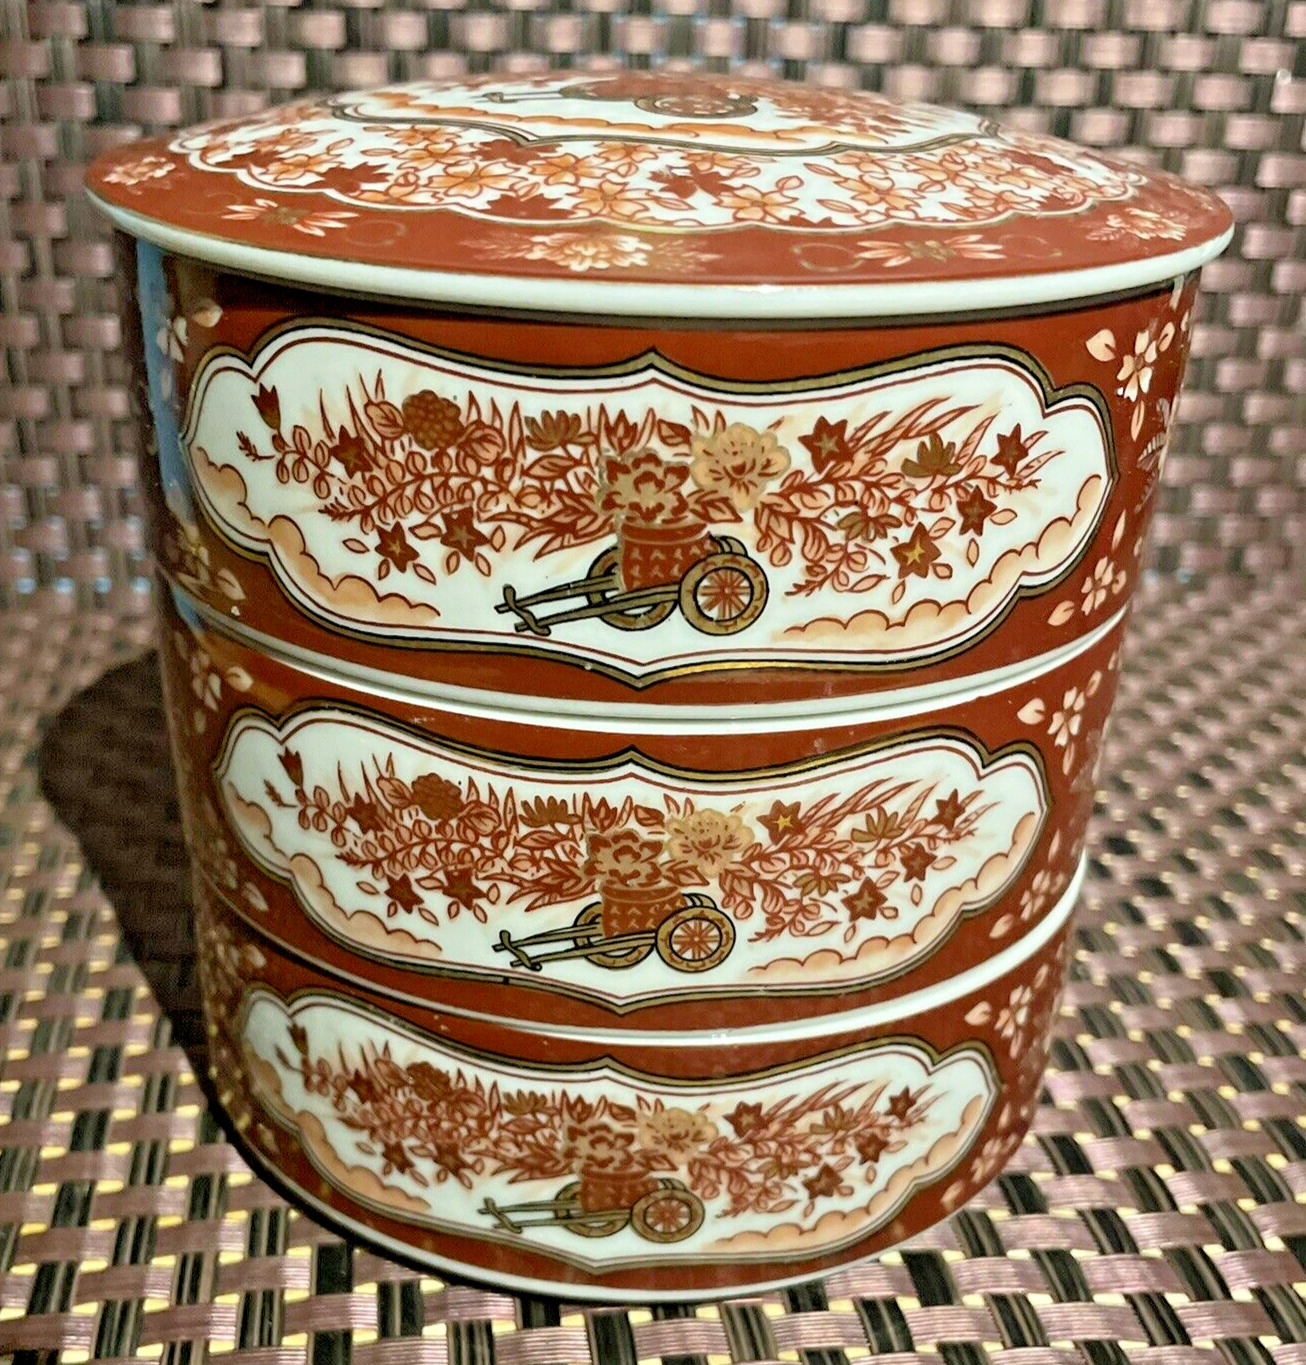 3 VTG Japanese Stacking Bowls Trinkets Lid OMC Porcelain Decorative Harvest Red